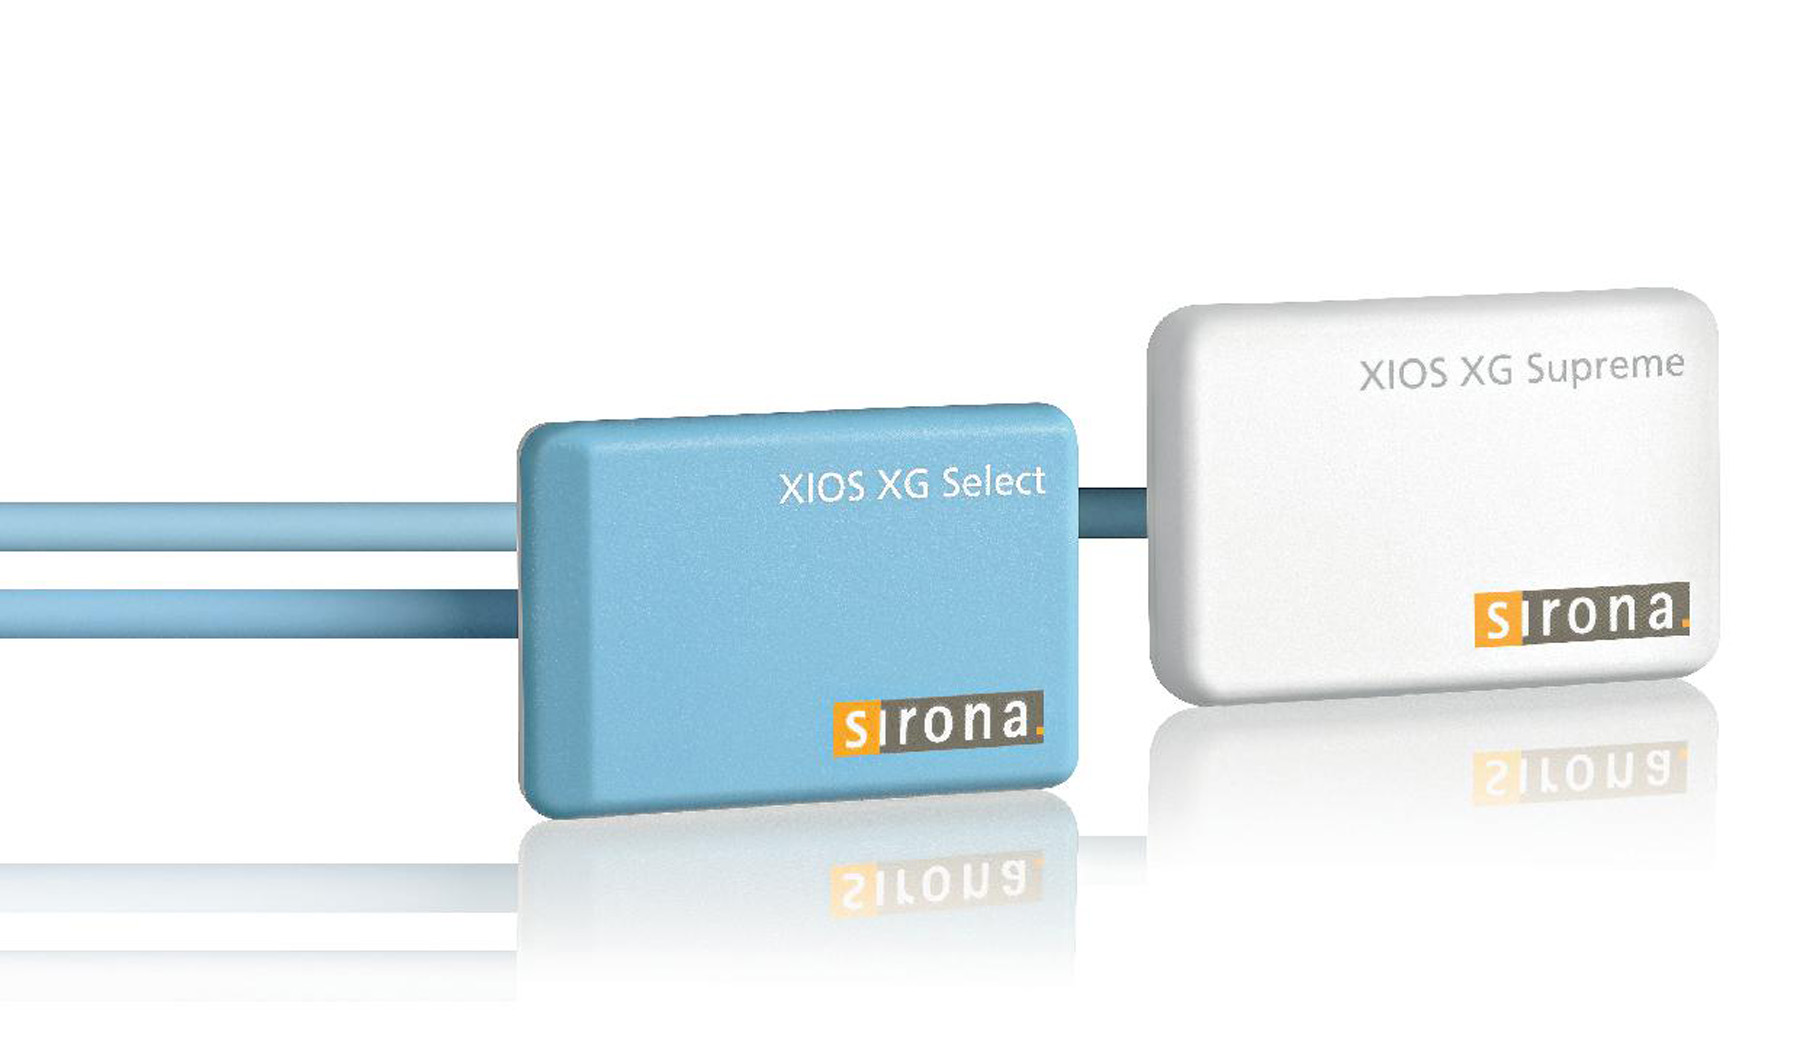 XIOS XG Supreme WiFi module with sensor size 0